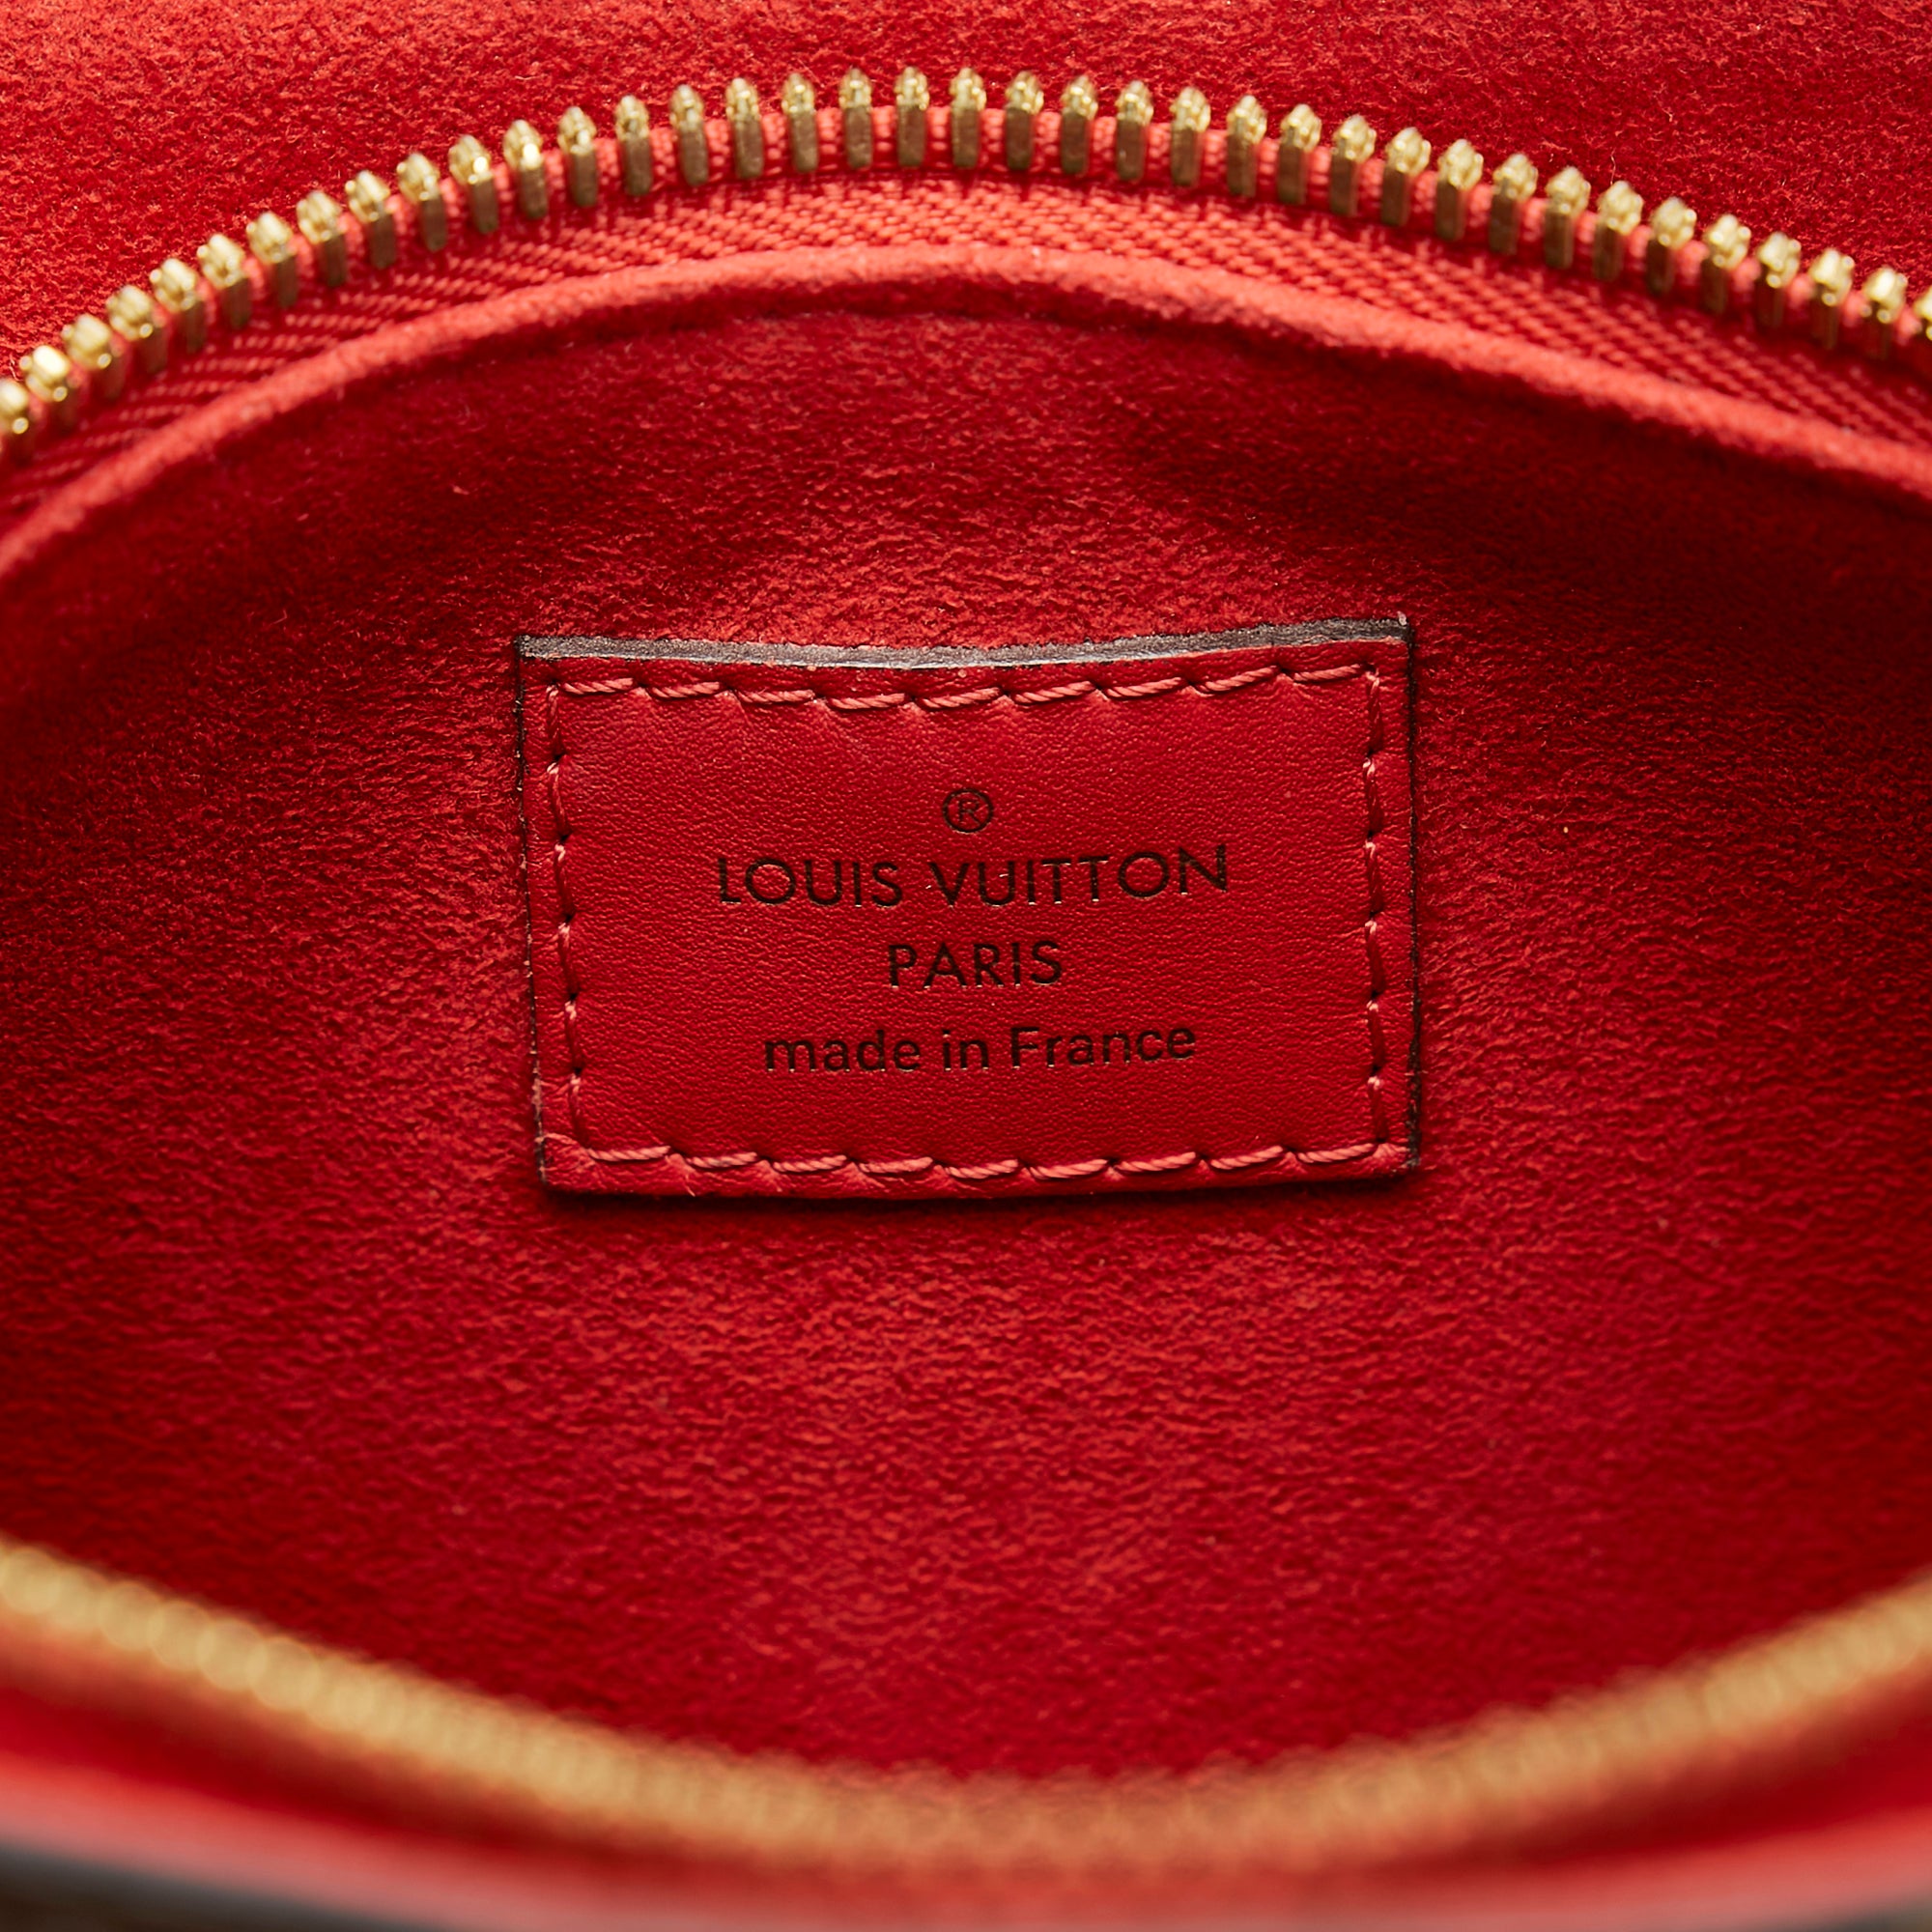 Louis Vuitton Soufflot BB – UN ATELIER